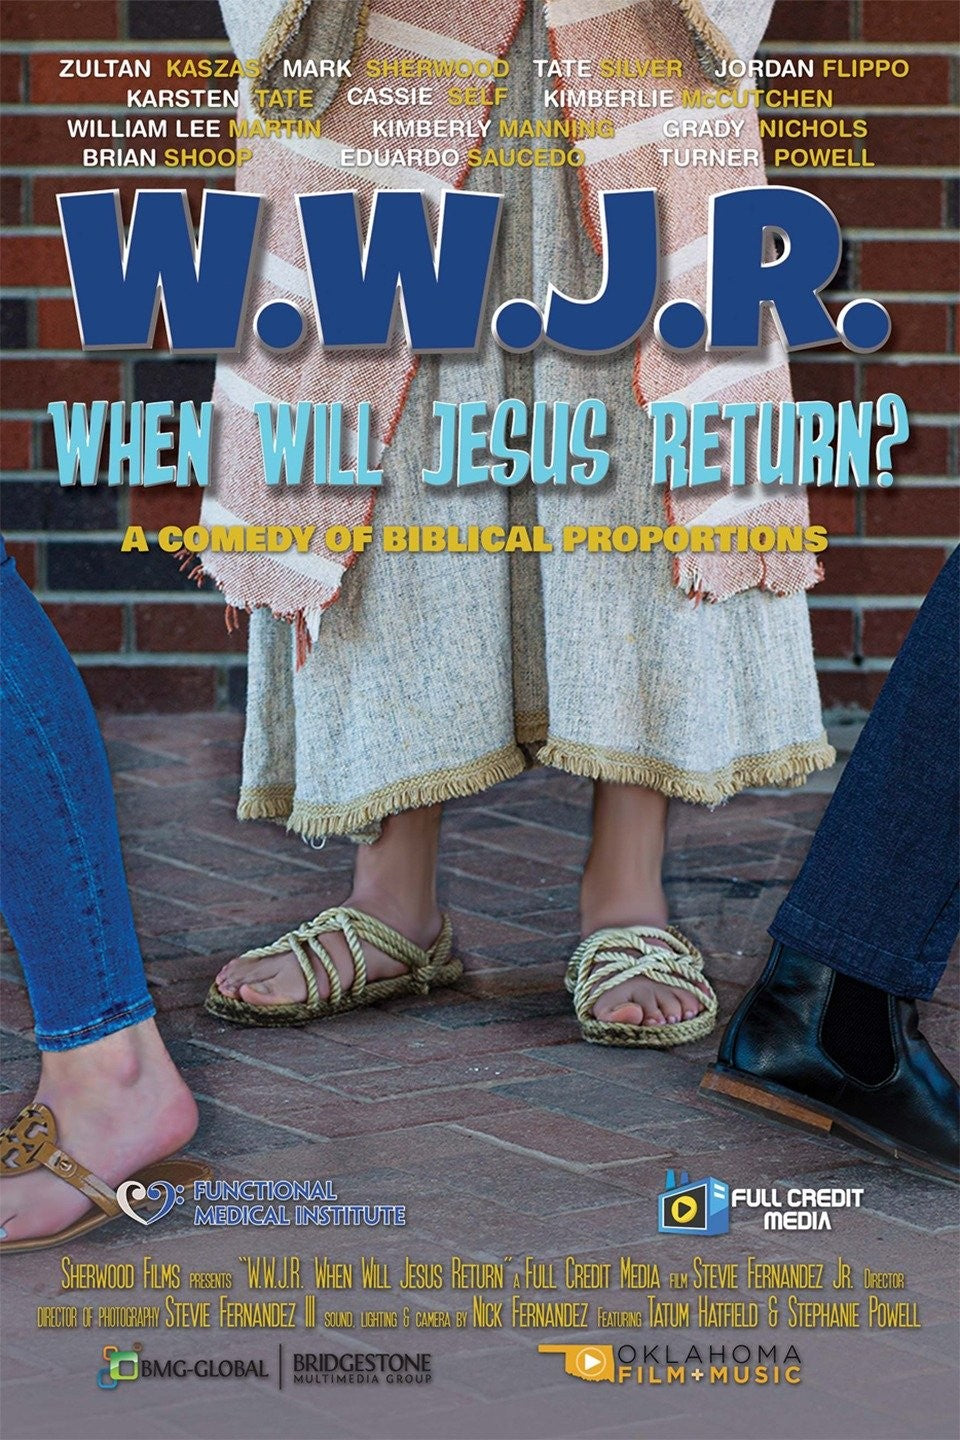 WHEN WILL JESUS RETURN?